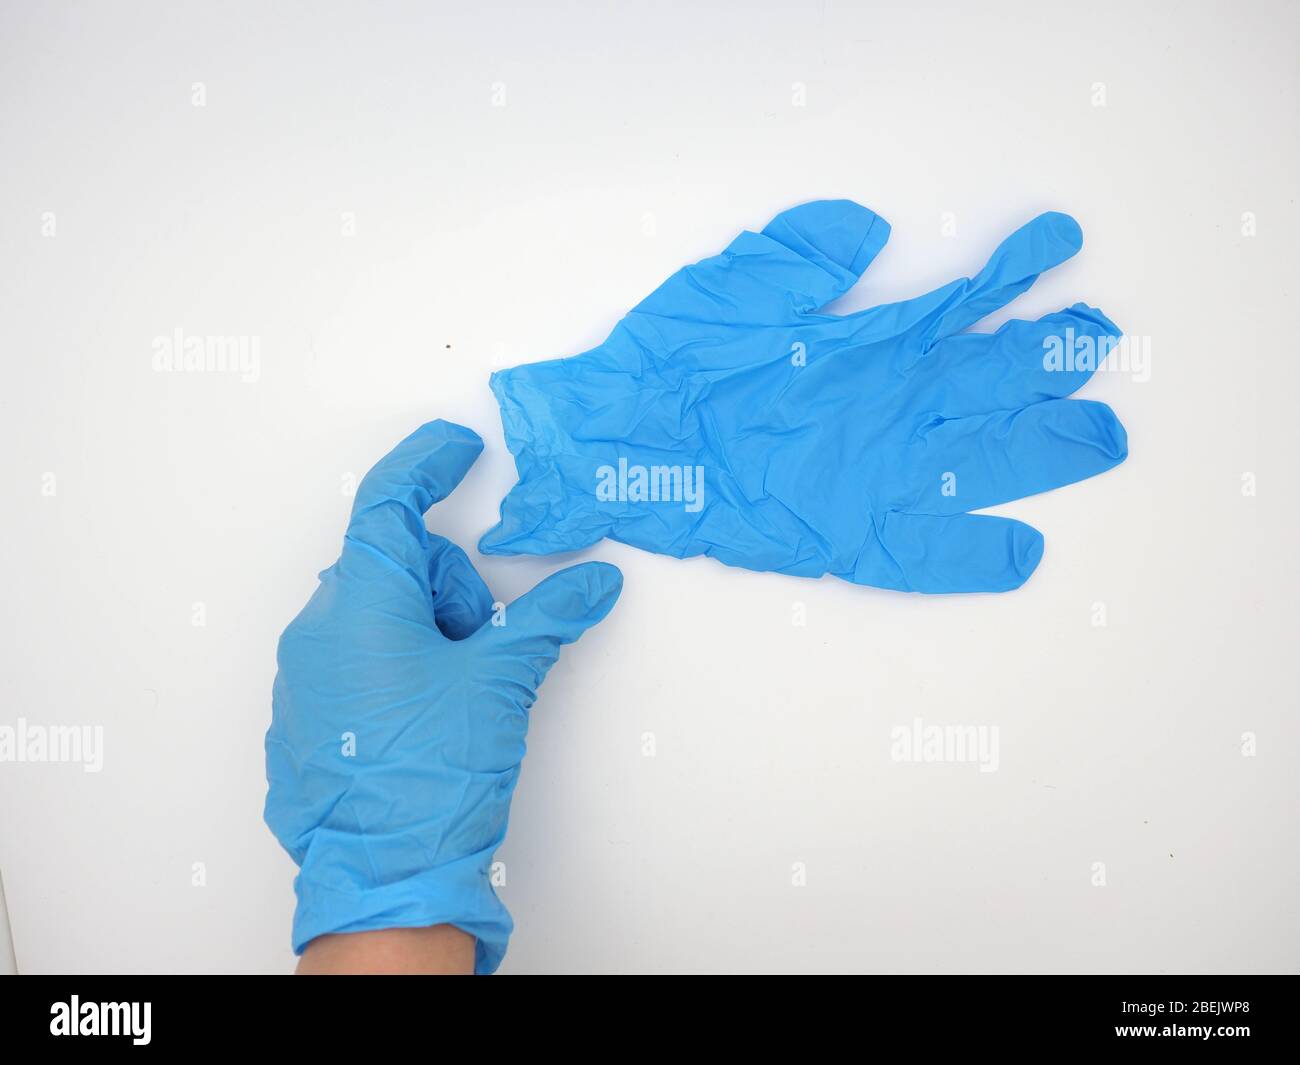 Mano con un guante desechable azul (PPE) alcanzando y recogiendo un par de gafas protectoras, Londres, Reino Unido Foto de stock